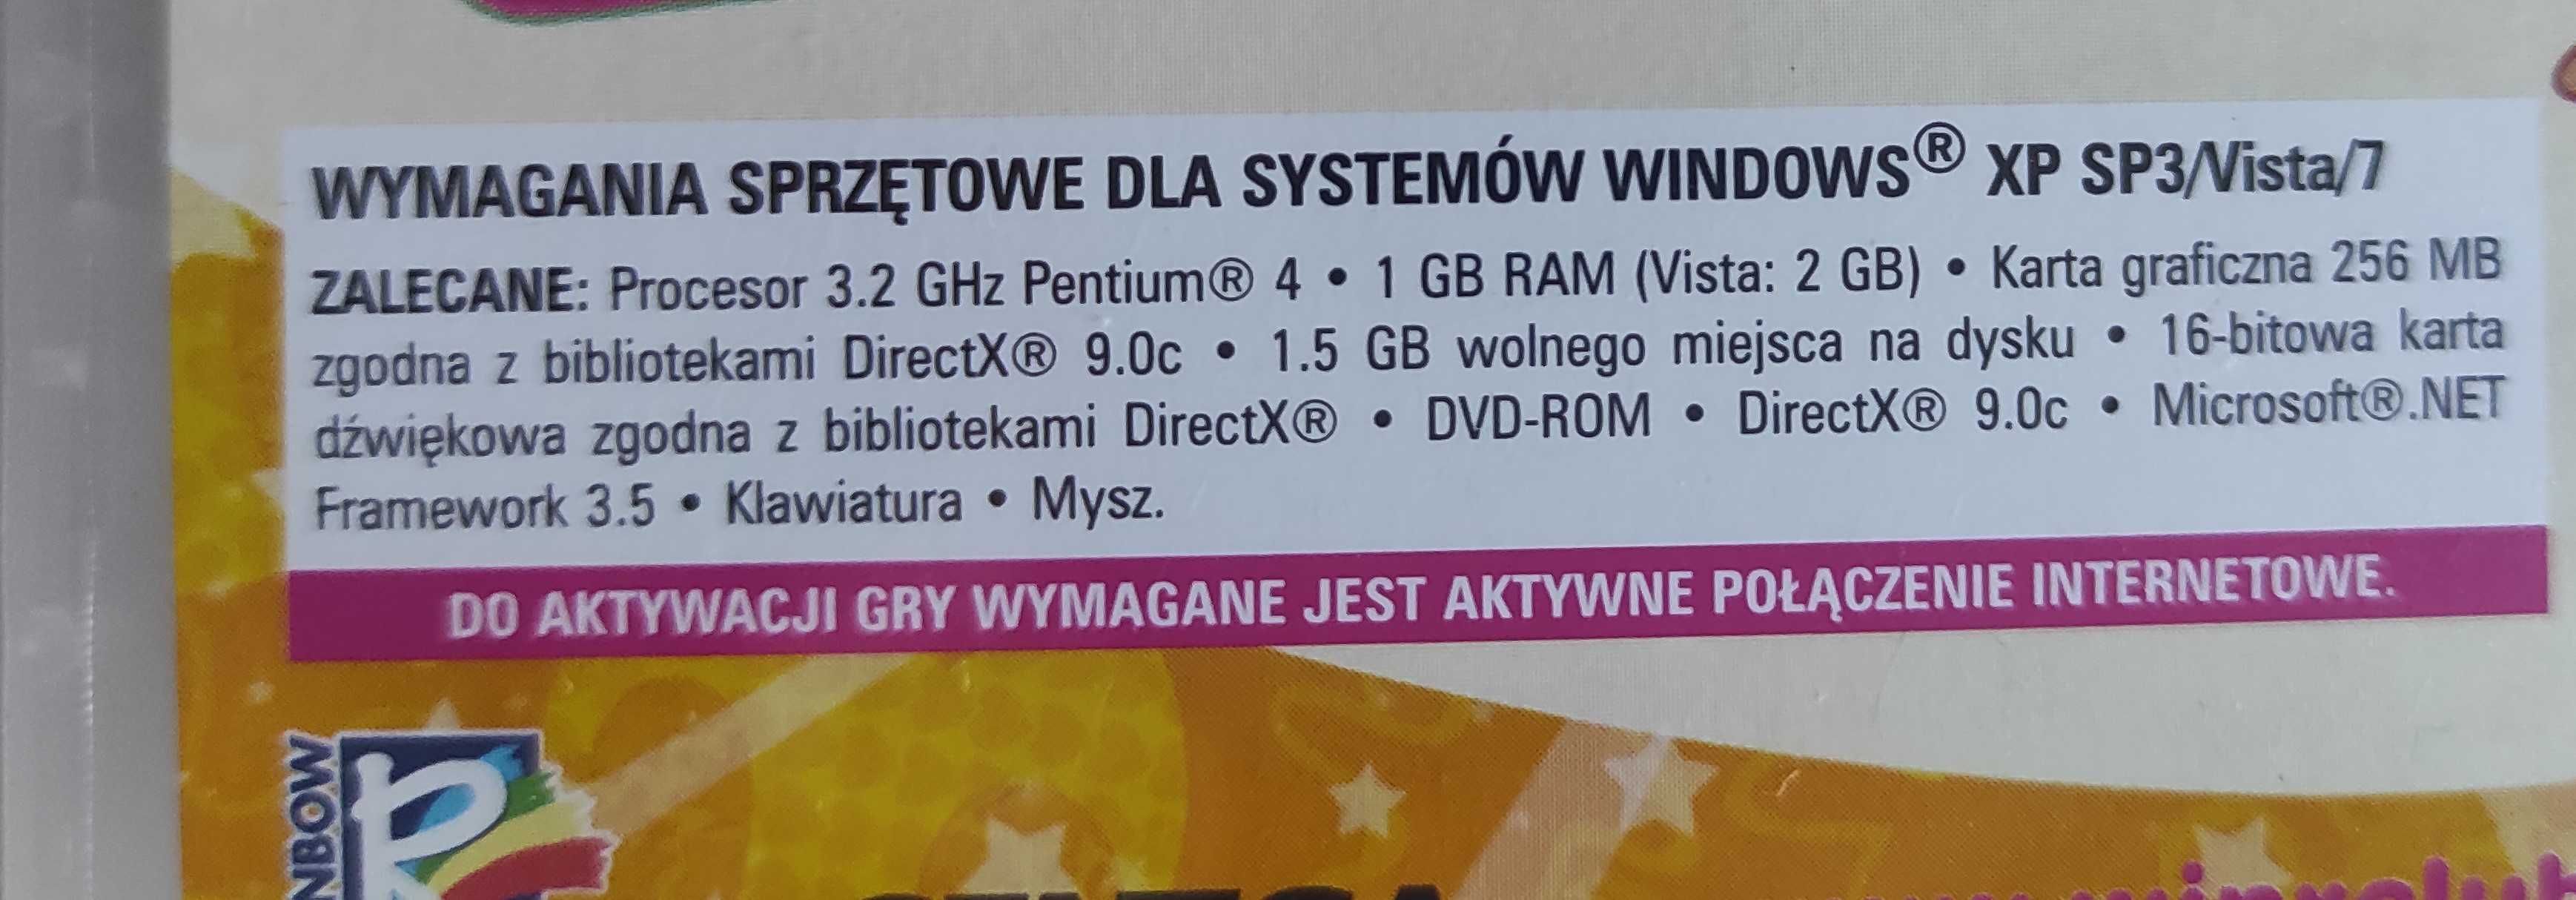 Gra komputerowa Club Winx Dookoła Świata